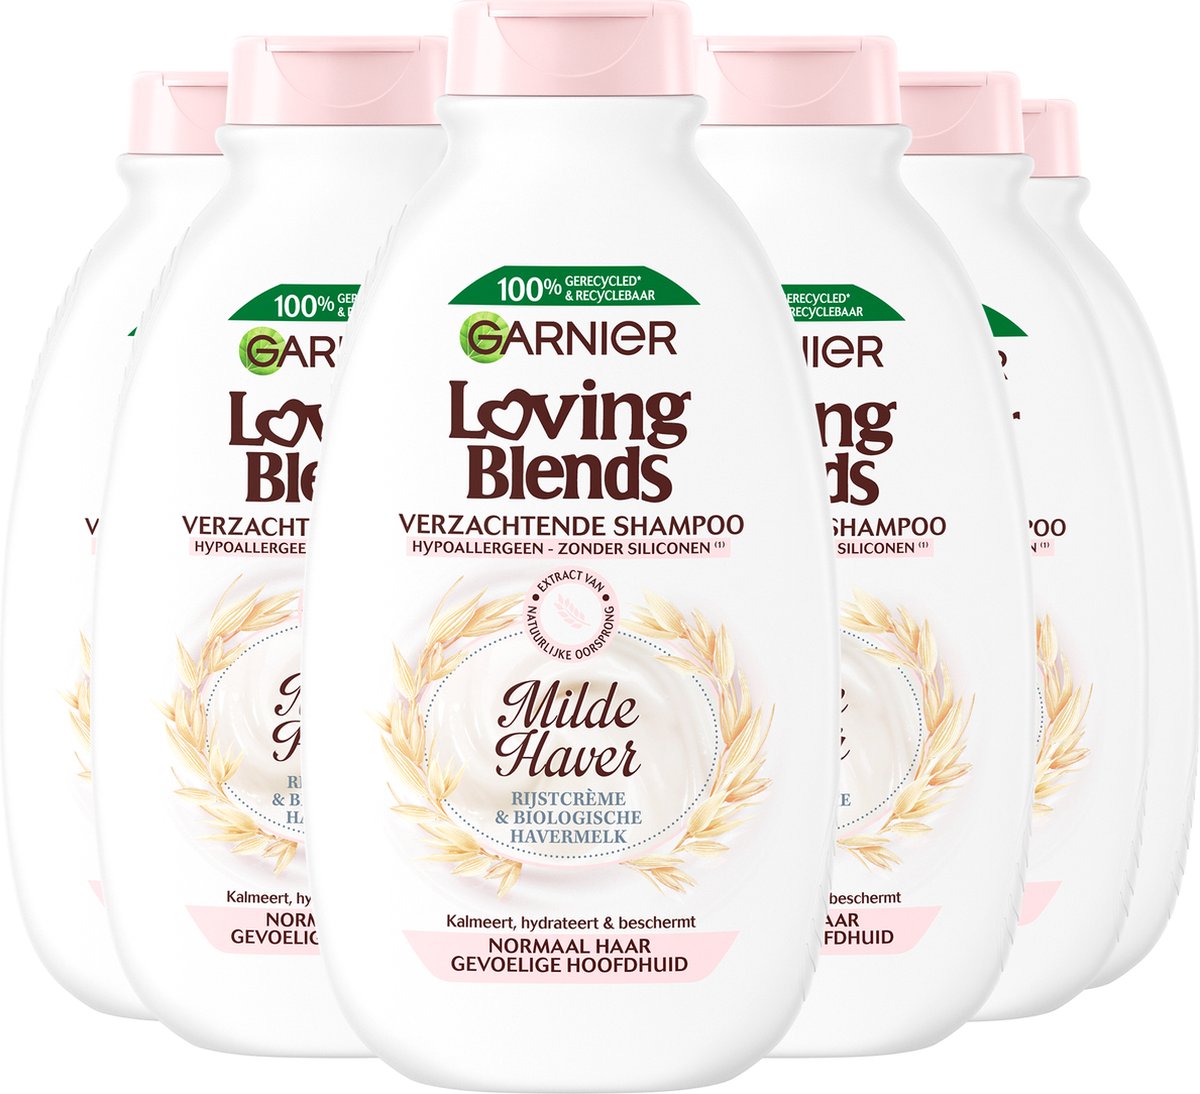 Garnier Loving Blends Milde Haver Verzachtende Shampoo Voordeelverpakking - Normaal Haar, Gevoelige Hoofdhuid - 6 x 300ml - Garnier